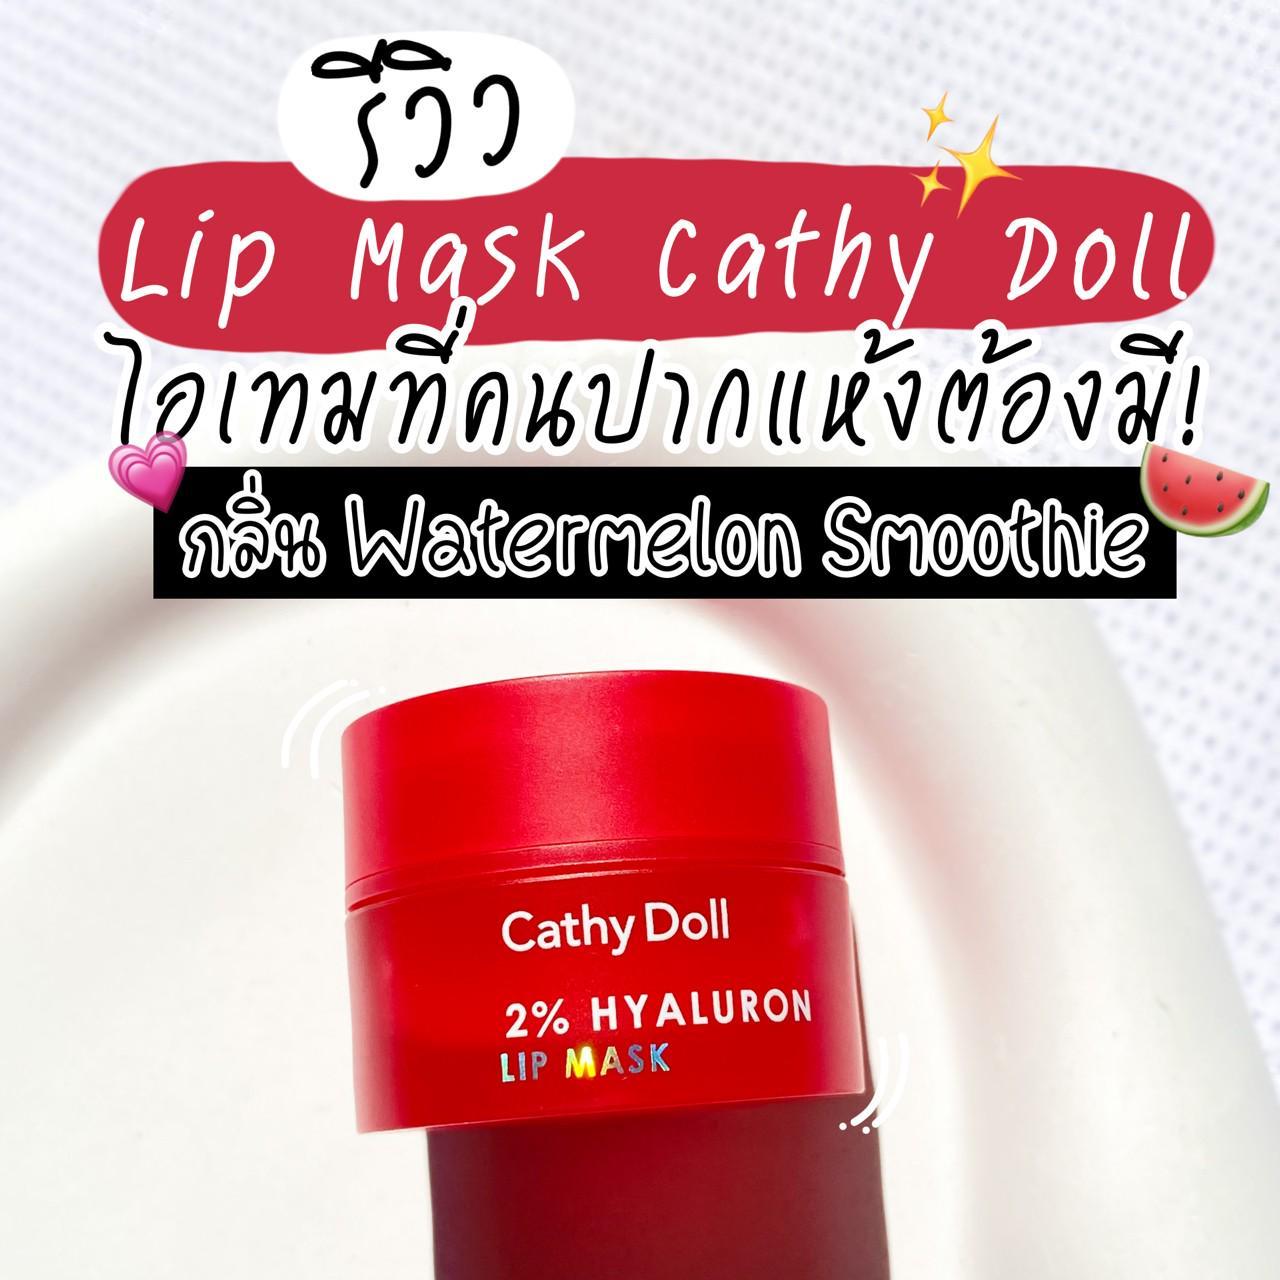 ภาพหน้าปก รีวิว Lip Mask Cathy Doll กลิ่น Watermelon Smoothie ไอเทมที่คนปากแห้งต้องมี! 🍉✨ ที่:0